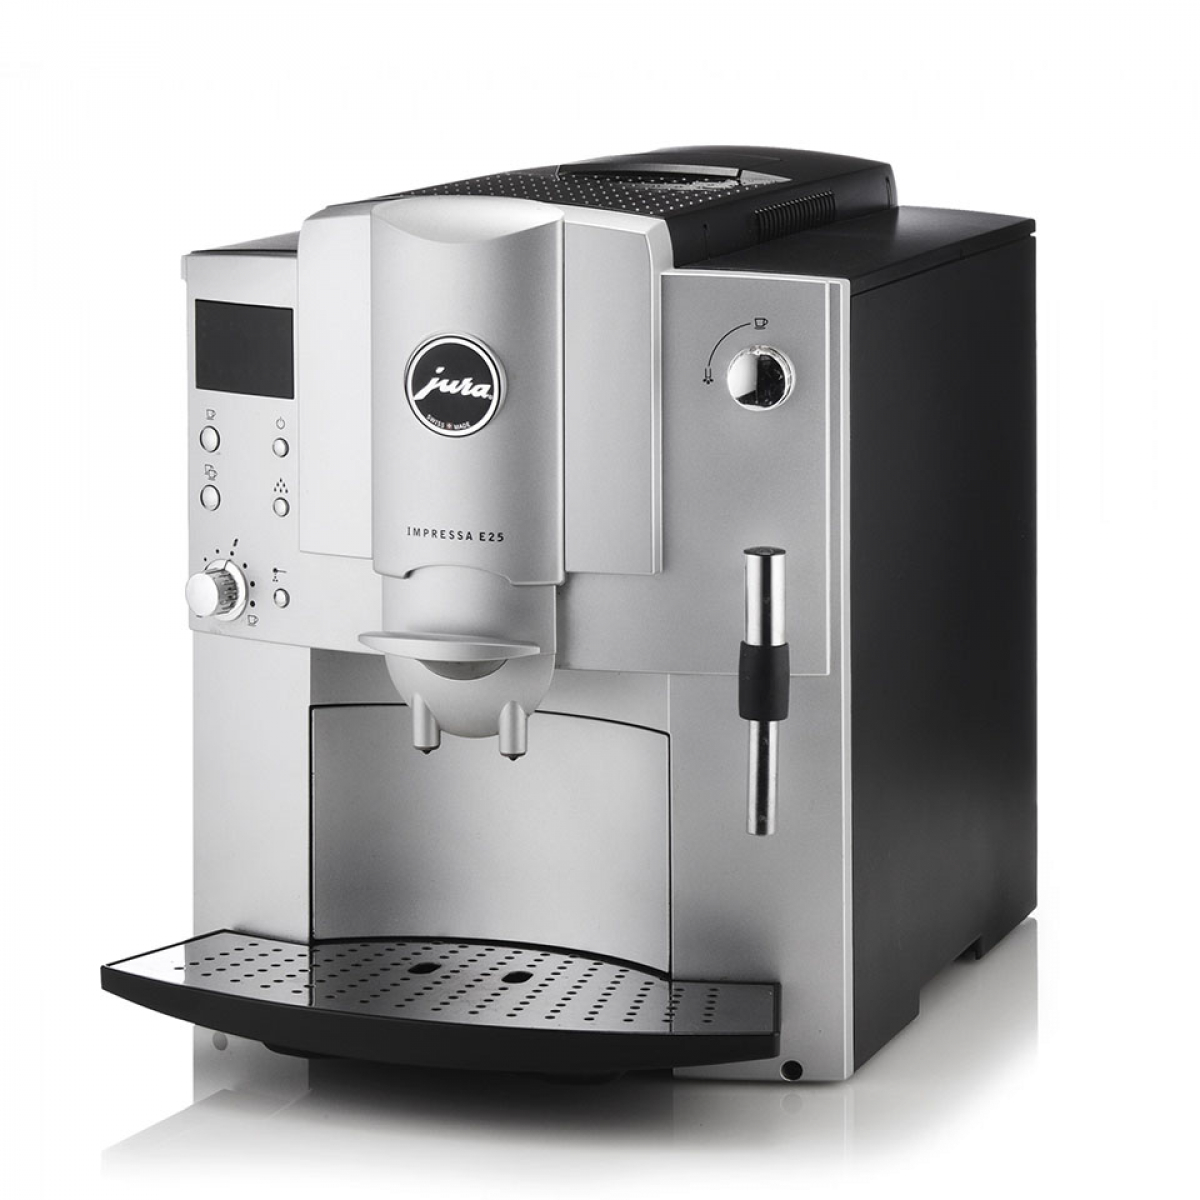 Jura Impressa E25 automata darálós kávéfőzőgép